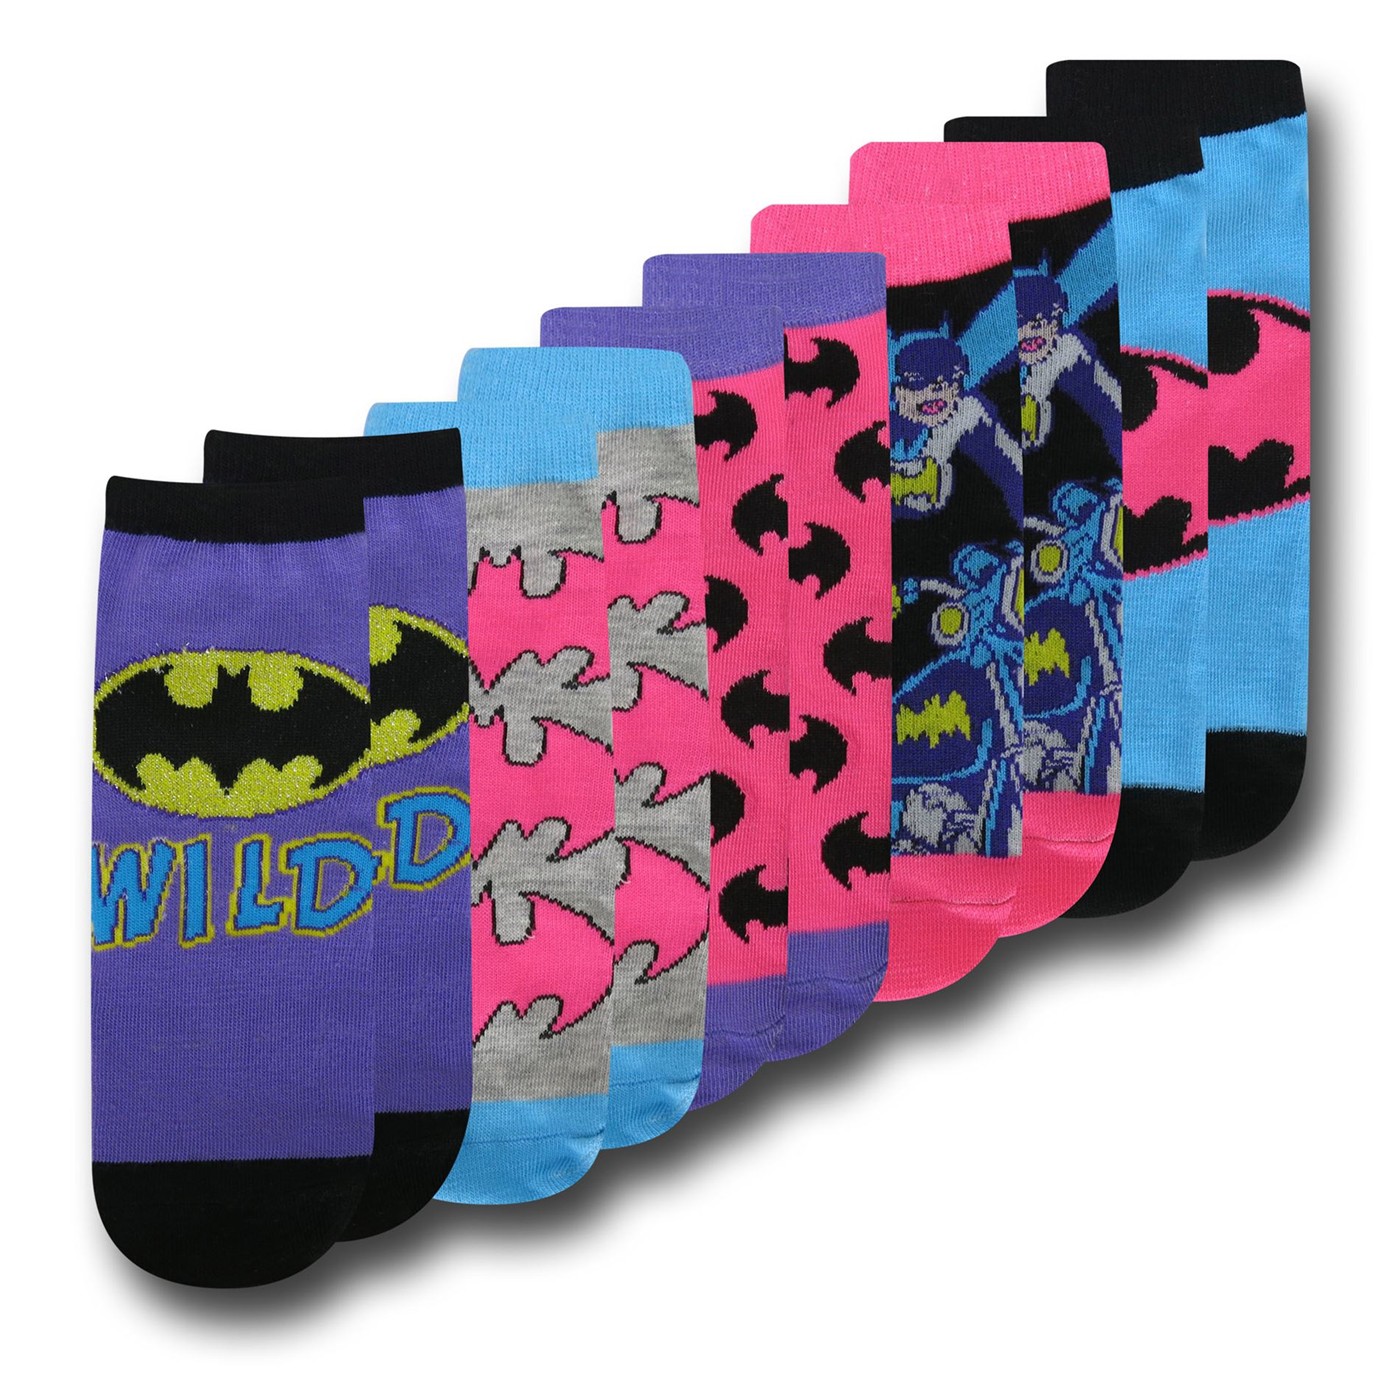 Batgirl Womens Purple Low-Cut Sock 5-Pair Pack